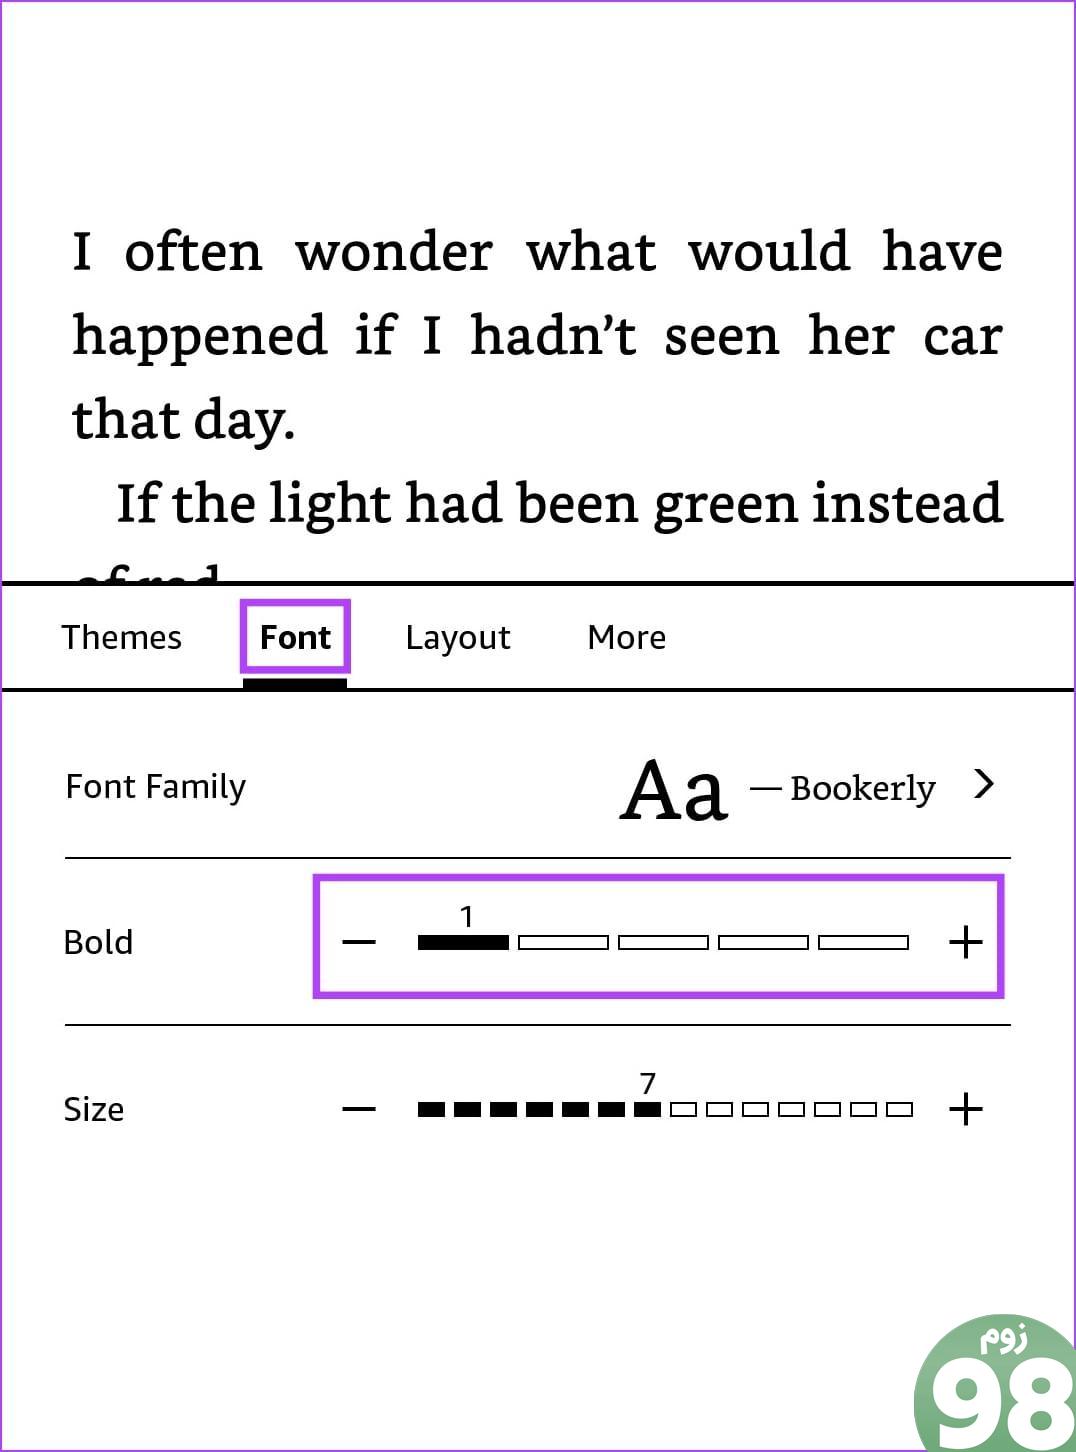 Bold را در Kindle فعال کنید